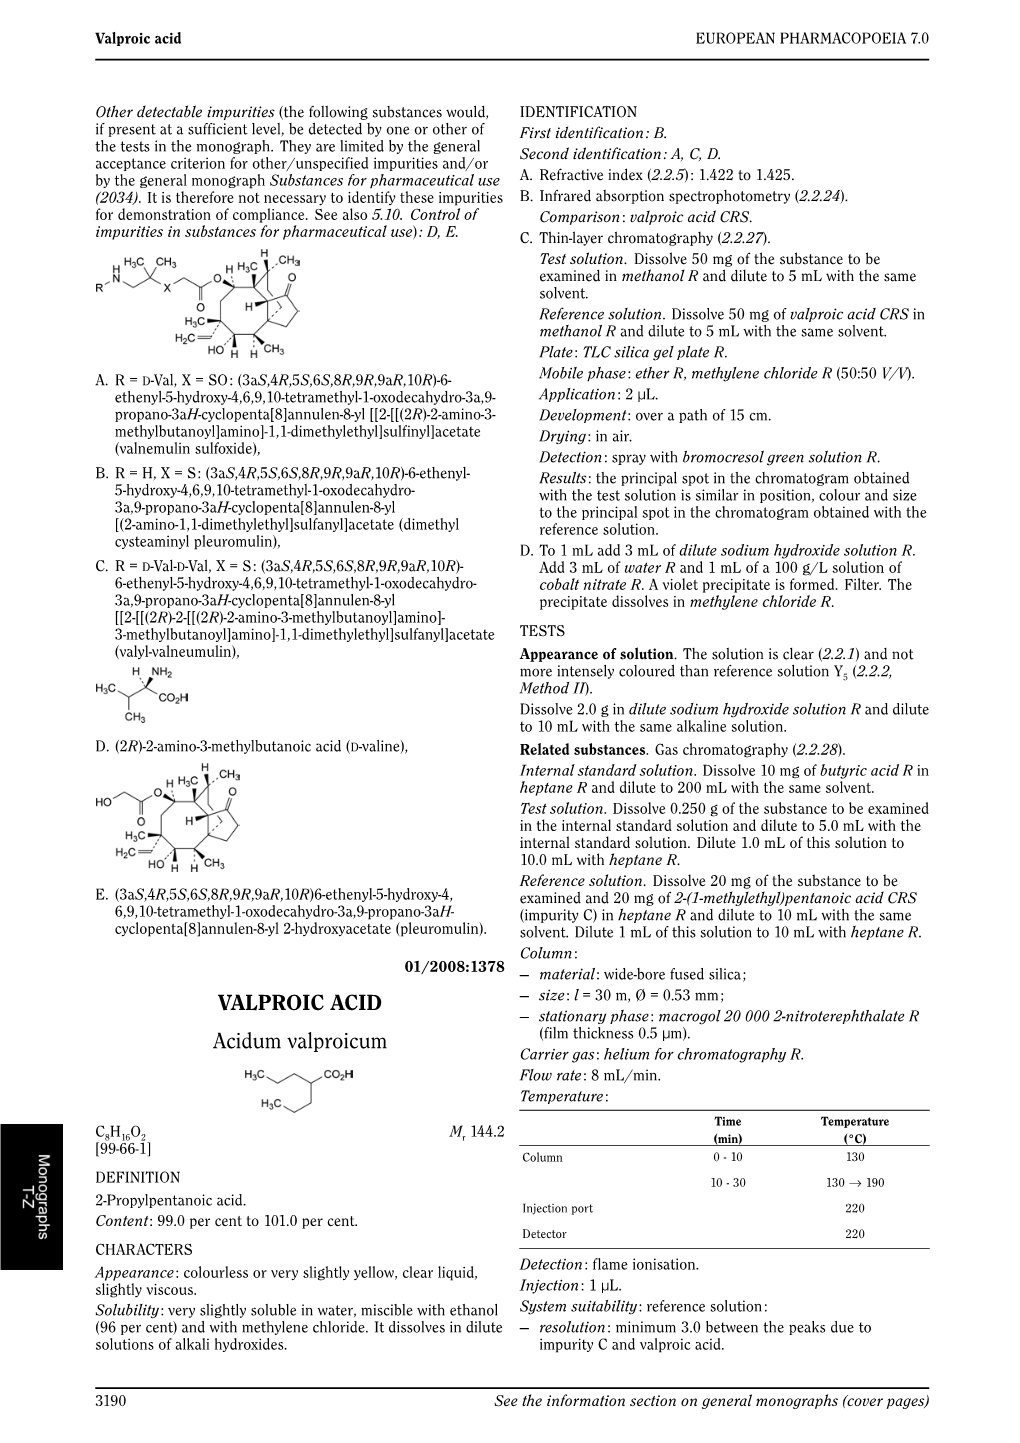 VALPROIC ACID Acidum Valproicum